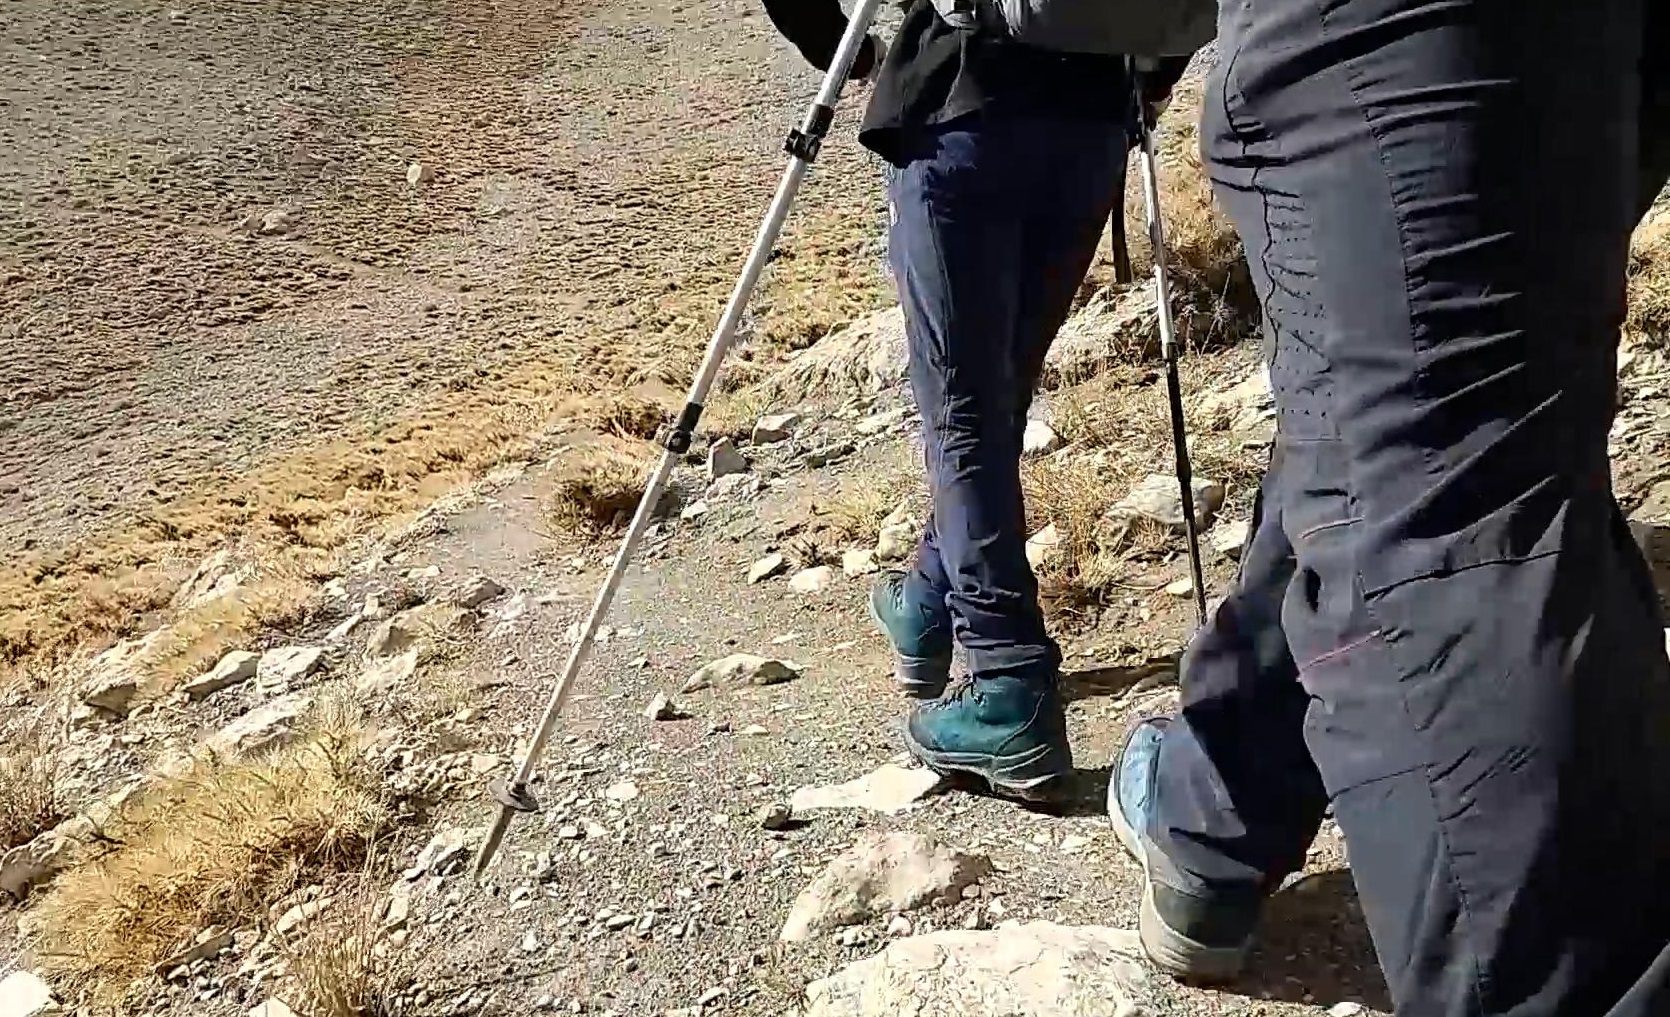 صعود تیم امداد و نجات کوهستان جمعیت هلال احمر به قله برف کرمو برای آمادگی و امداد رسانی در زمان حادثه